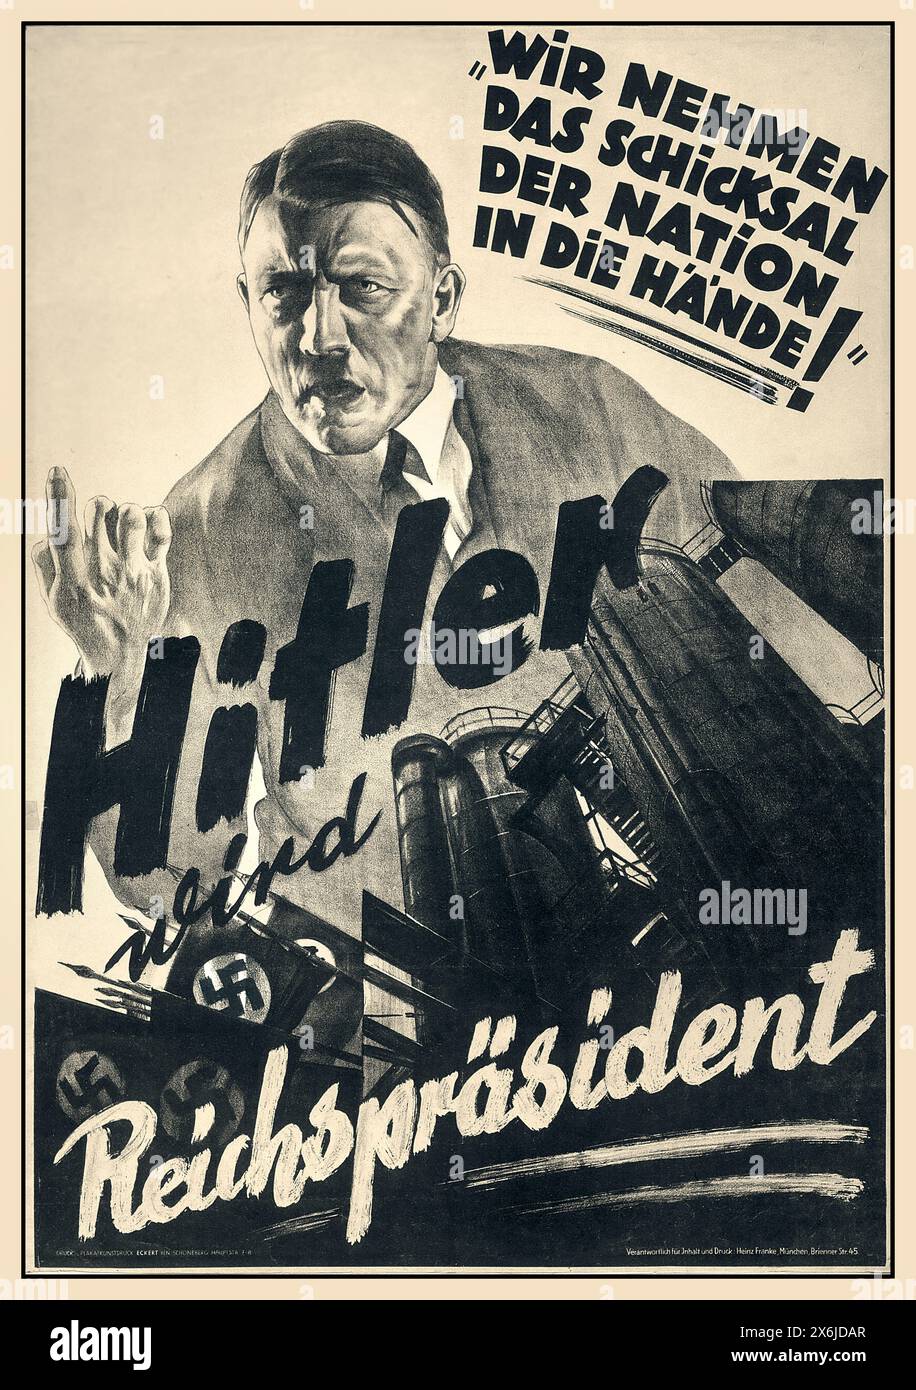 ADOLF HITLER NSDAP-Vorkriegswahl 1930: Deutsches Propagandaplakat mit Adolf Hitler als „Reichsprasident“, in dem steht: „Wir nehmen das Schicksal der Nation in unsere Hand“ Nazi-Deutschland Stockfoto